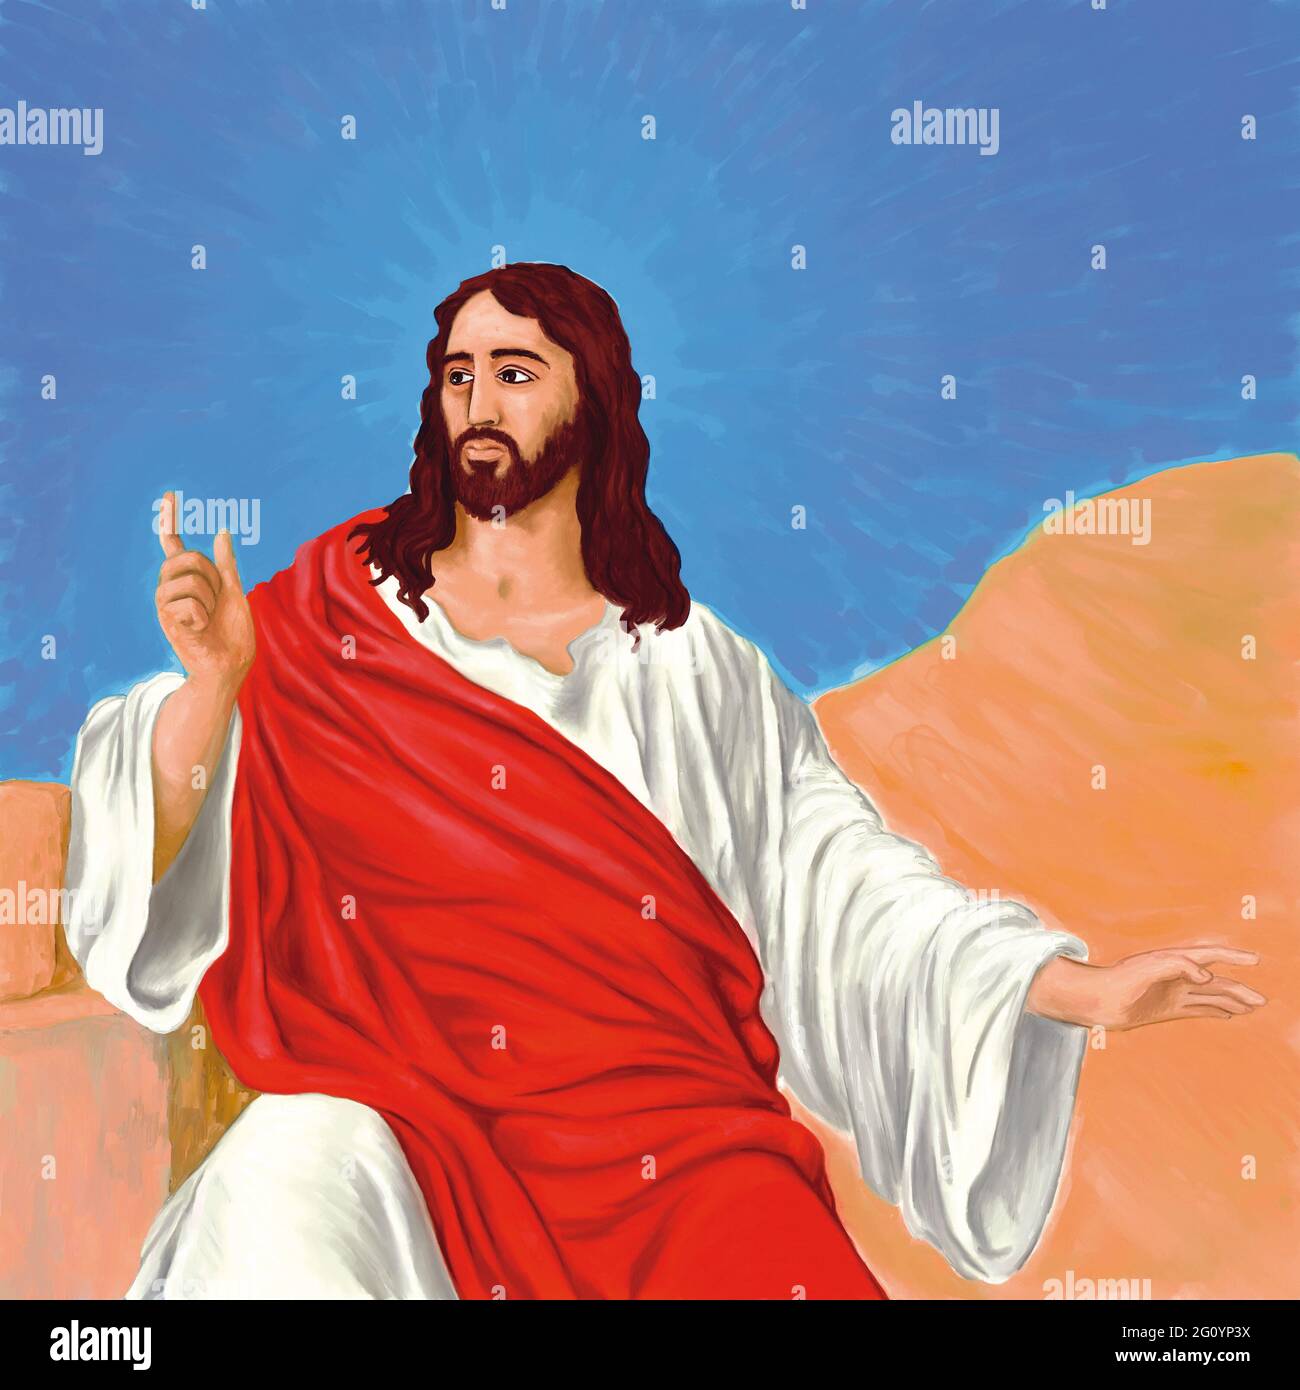 Painted illustration of Jesus Christ Catholic religion